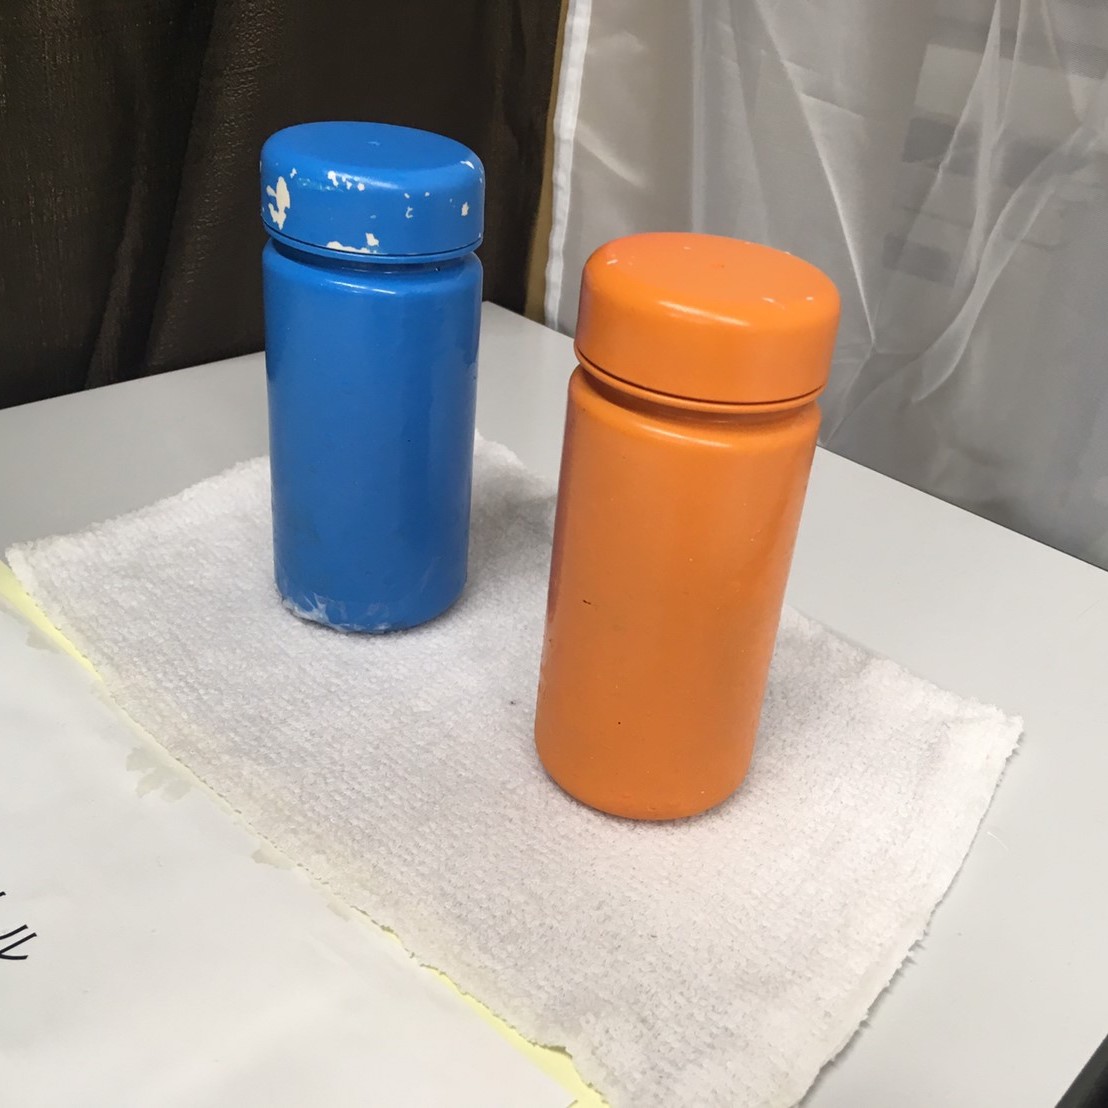 オレンジの水筒と青い水筒